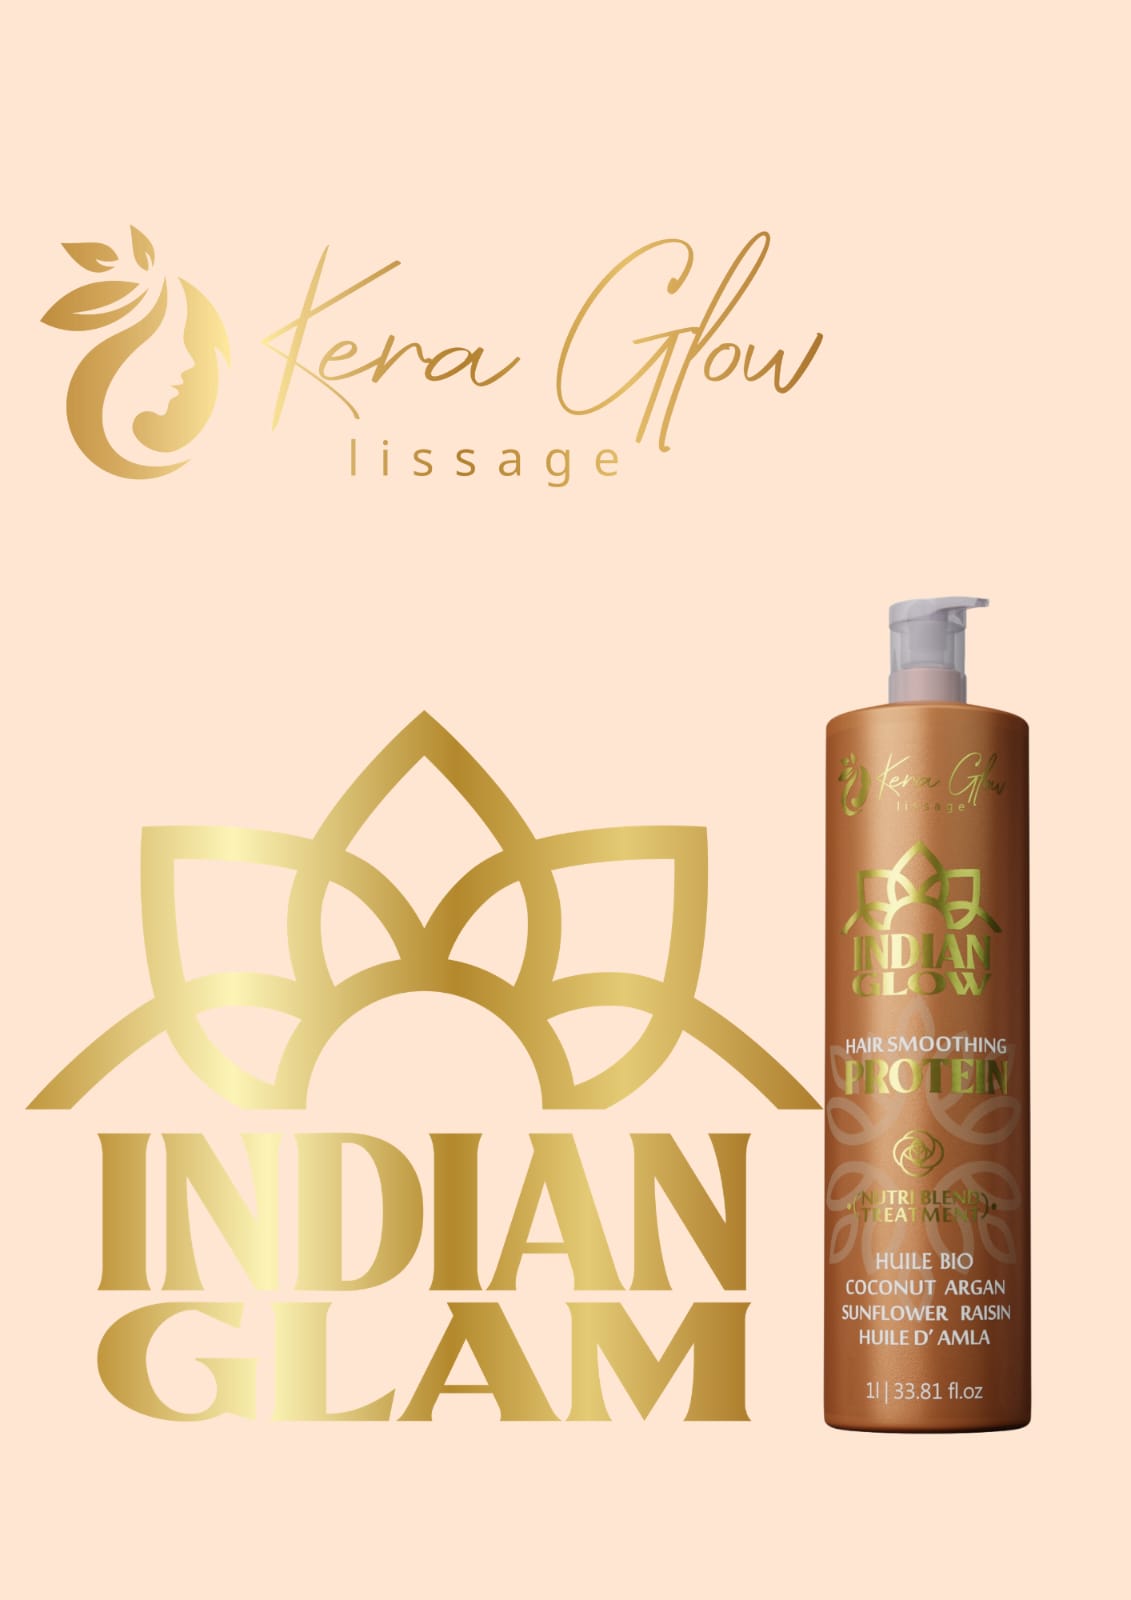 Lissage indien Kera Glow 1L + Masque keratine Hydrat miss24 carat 500ml Offert